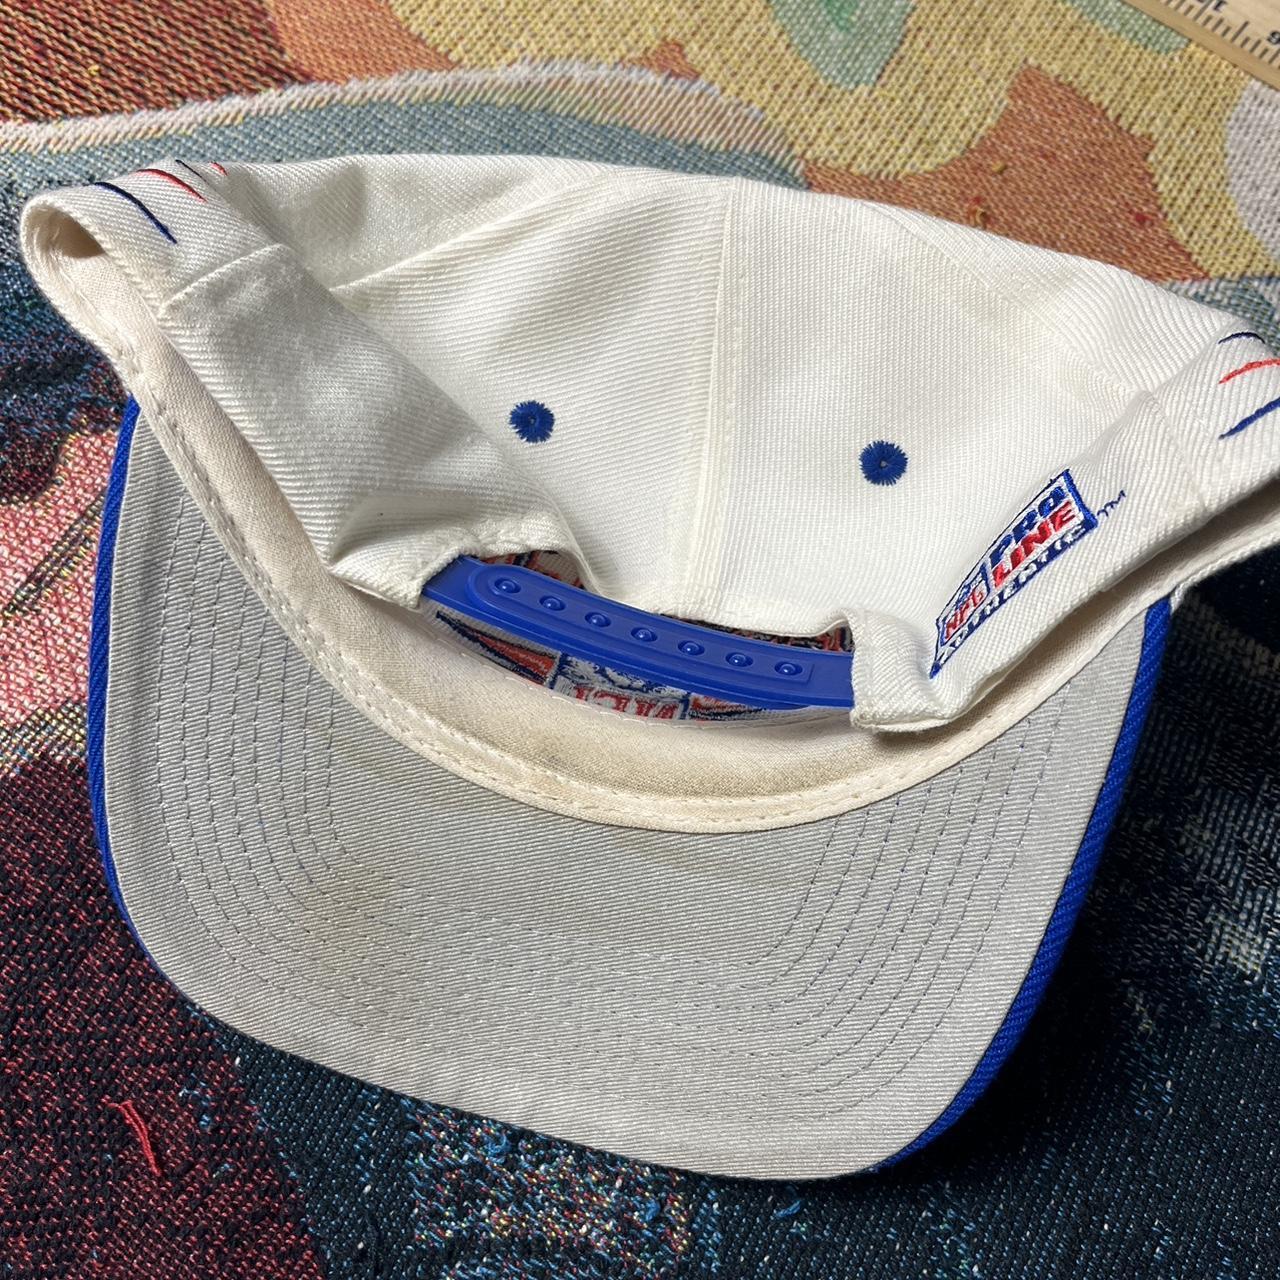 Vintage Denver Broncos Snapback Hat Adjustable Fit - Depop